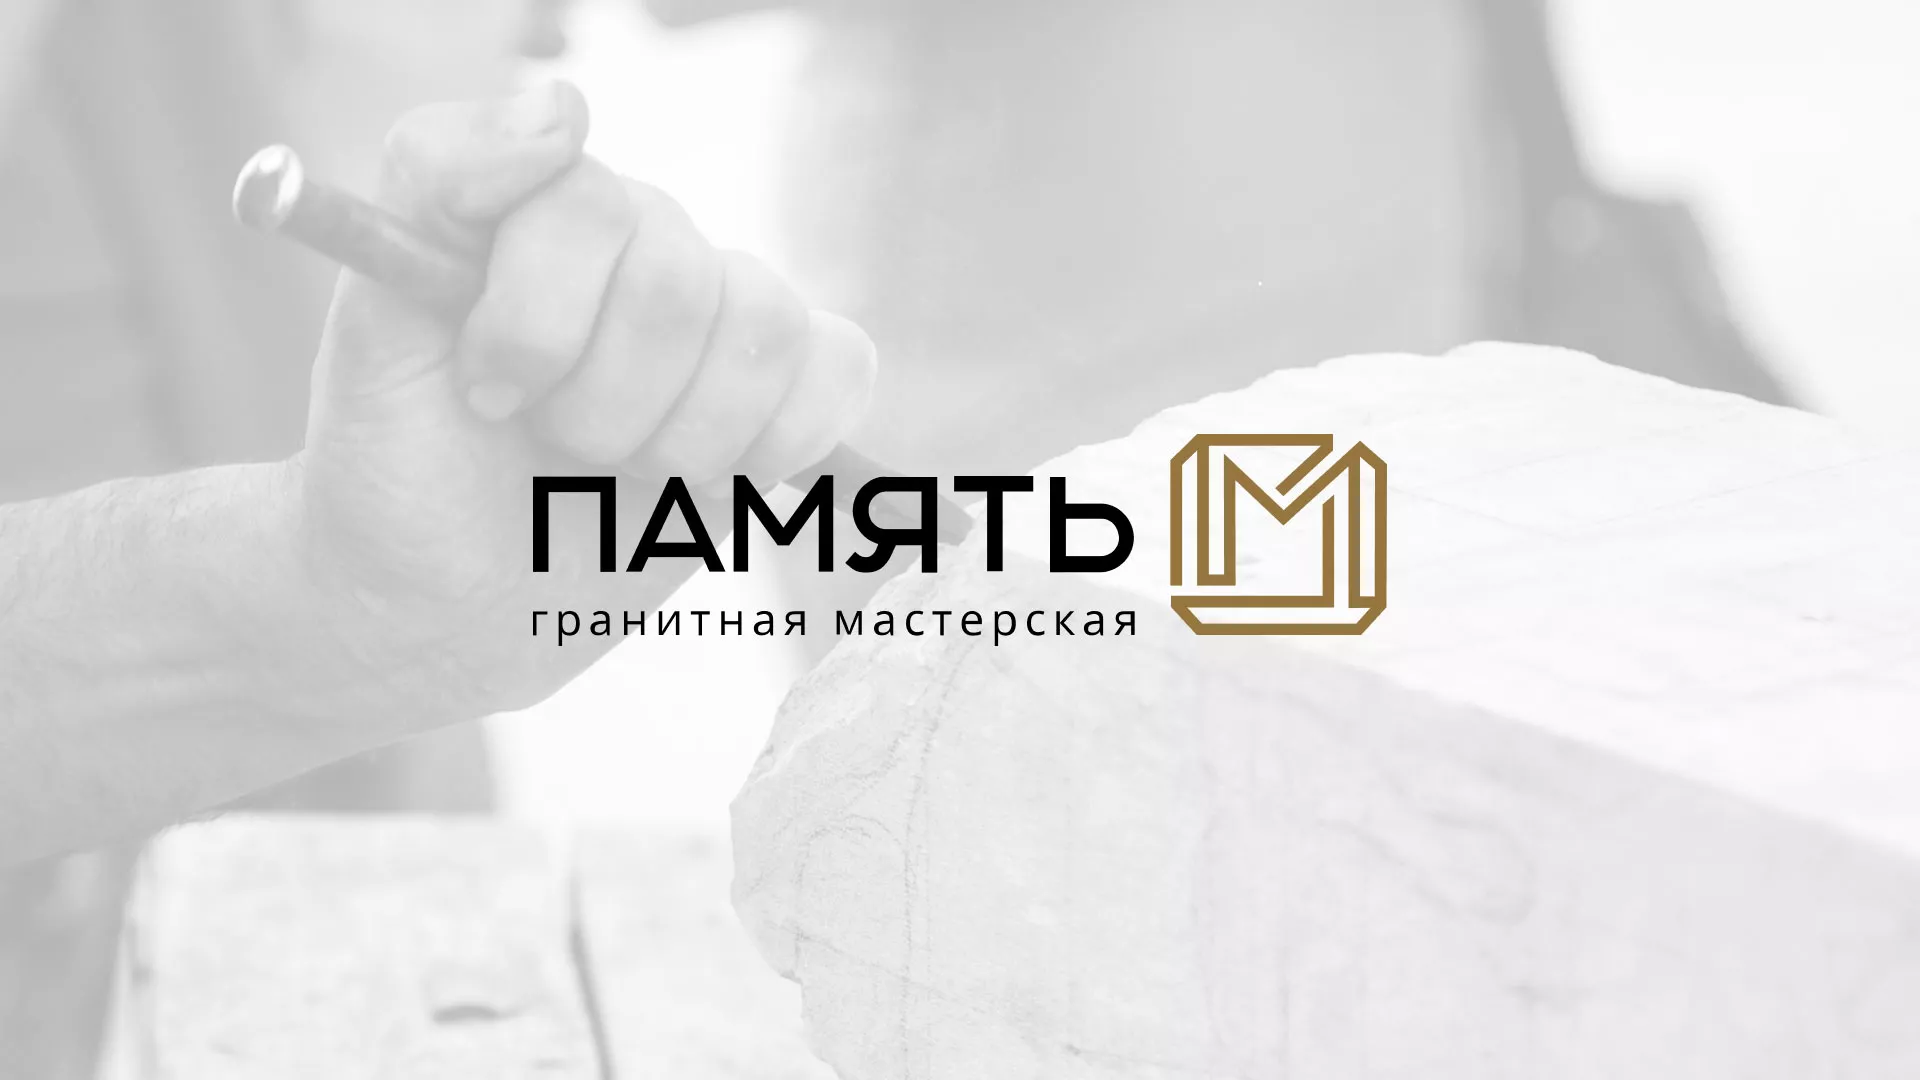 Разработка логотипа и сайта компании «Память-М» в Соколе